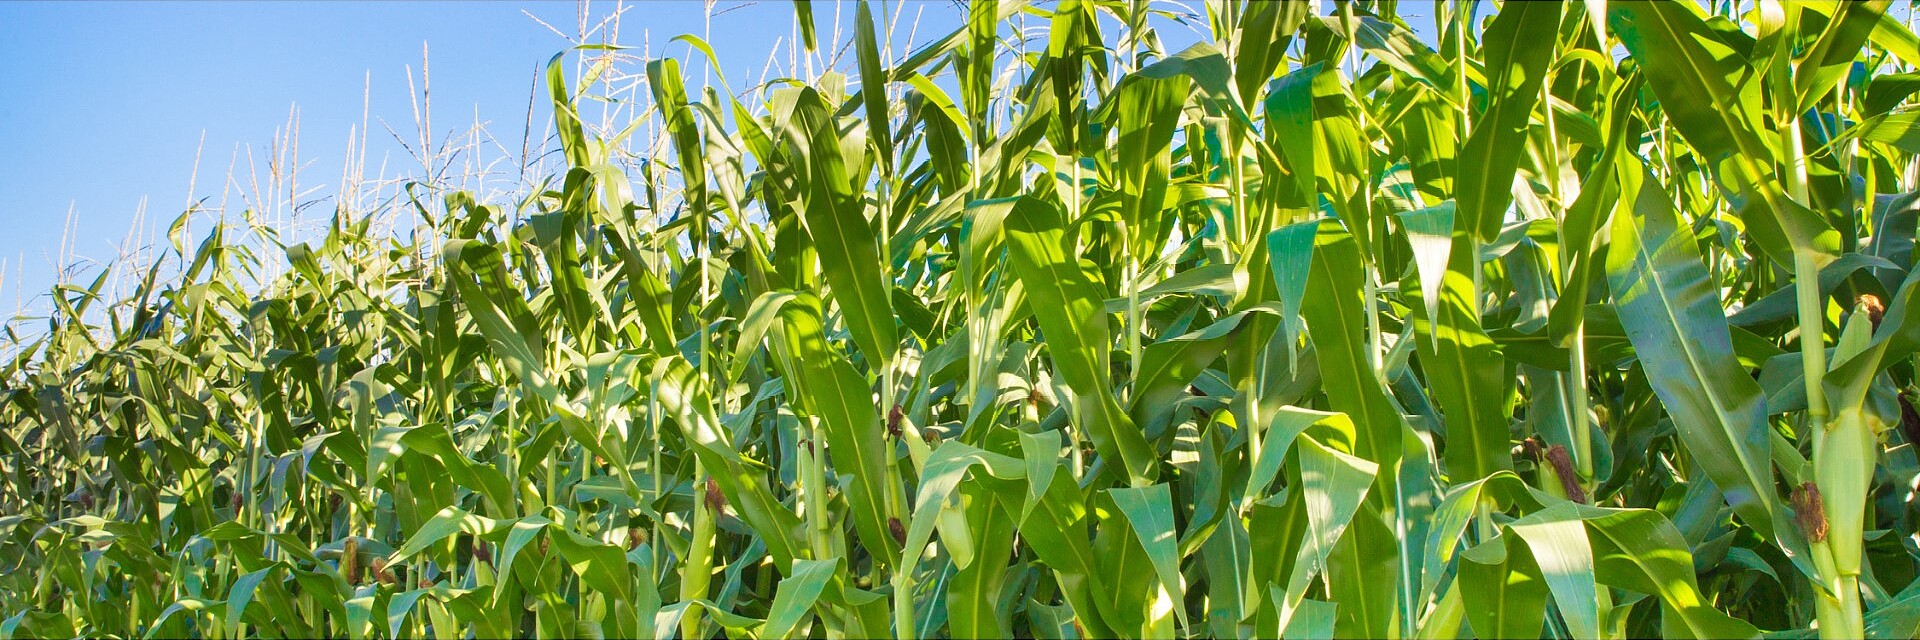 Dojrzewające pole kukurydzy